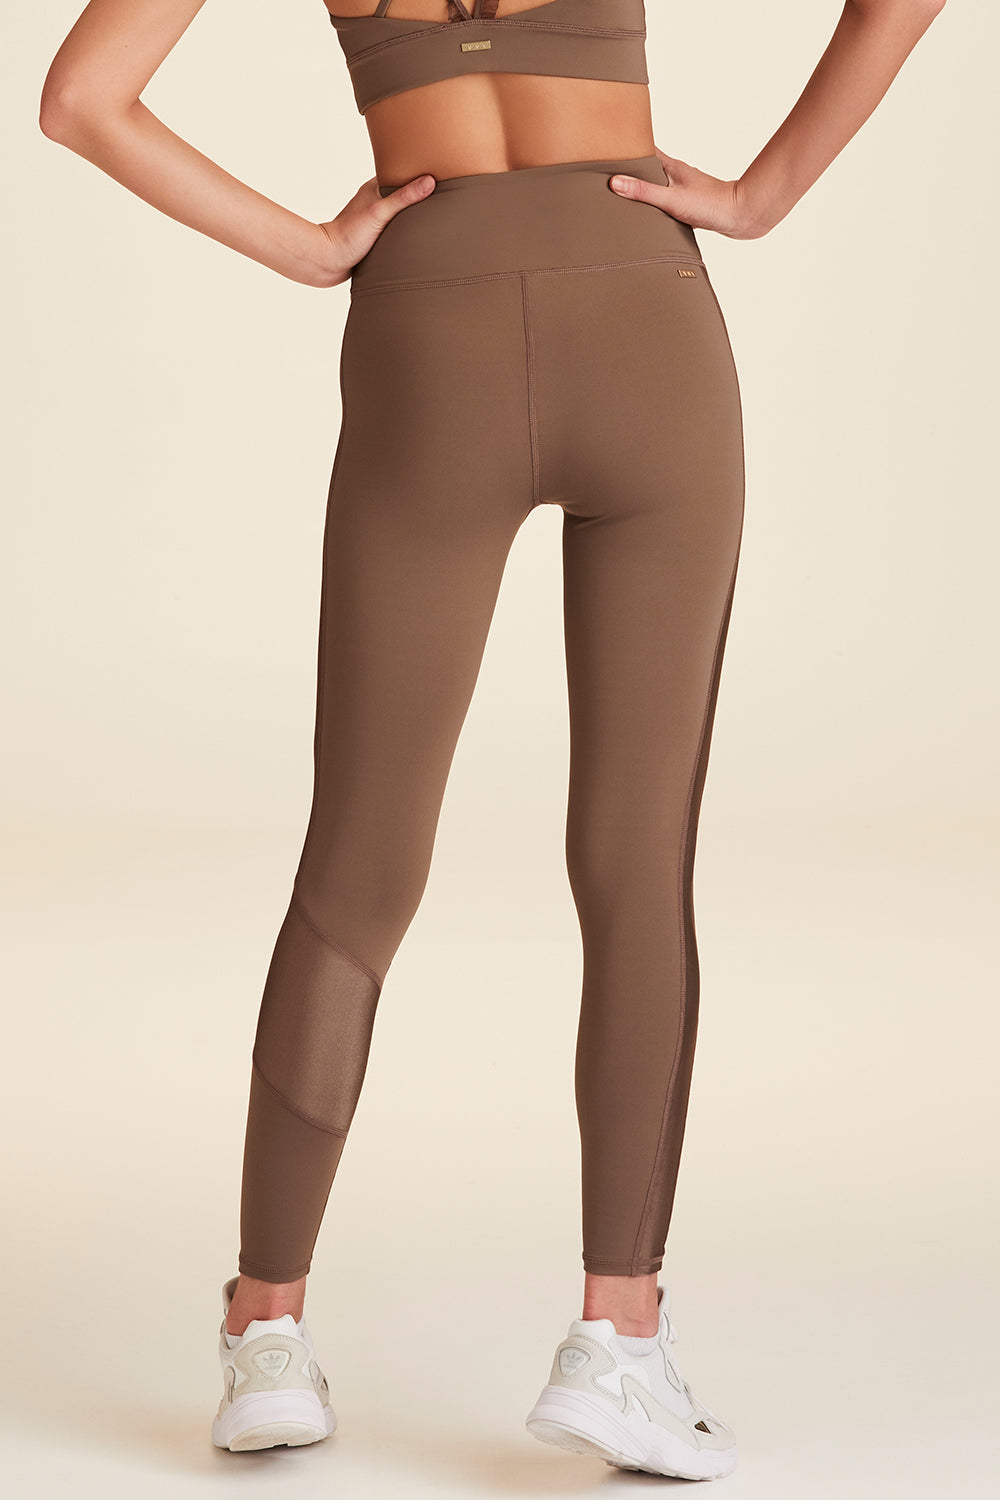 Calzedonia Leggings - Trousers - braun c brown/brown - Zalando.de